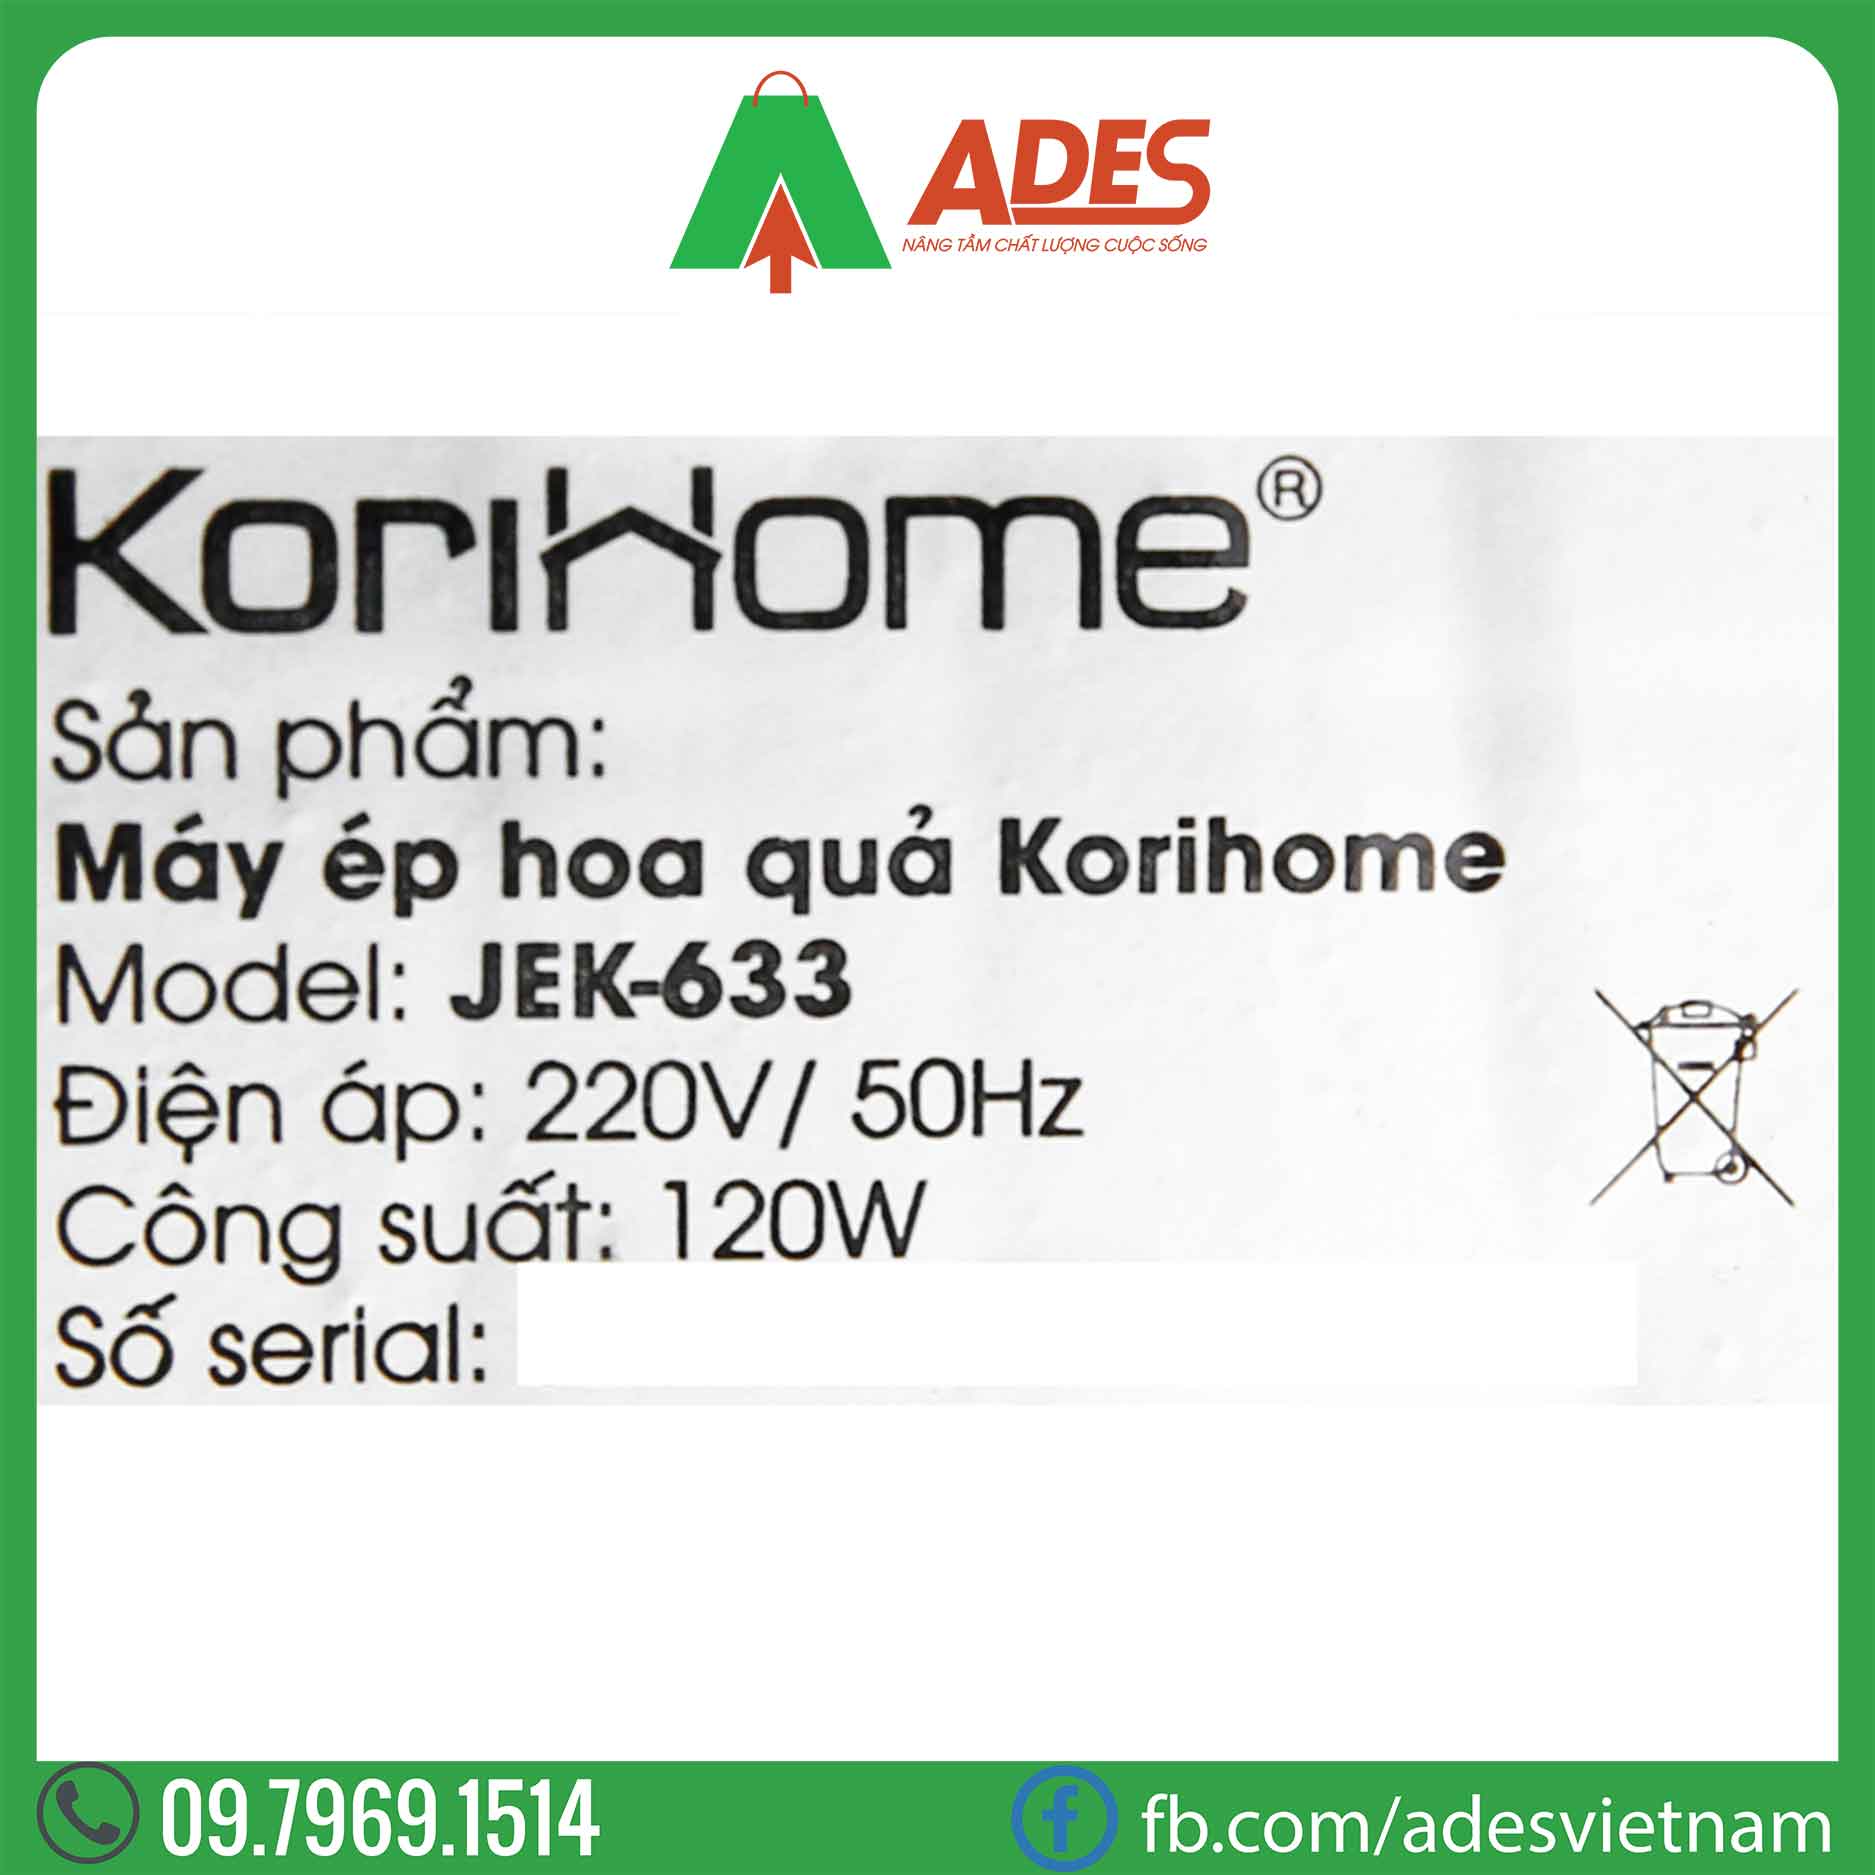 May ep cham KoriHome JEK-633